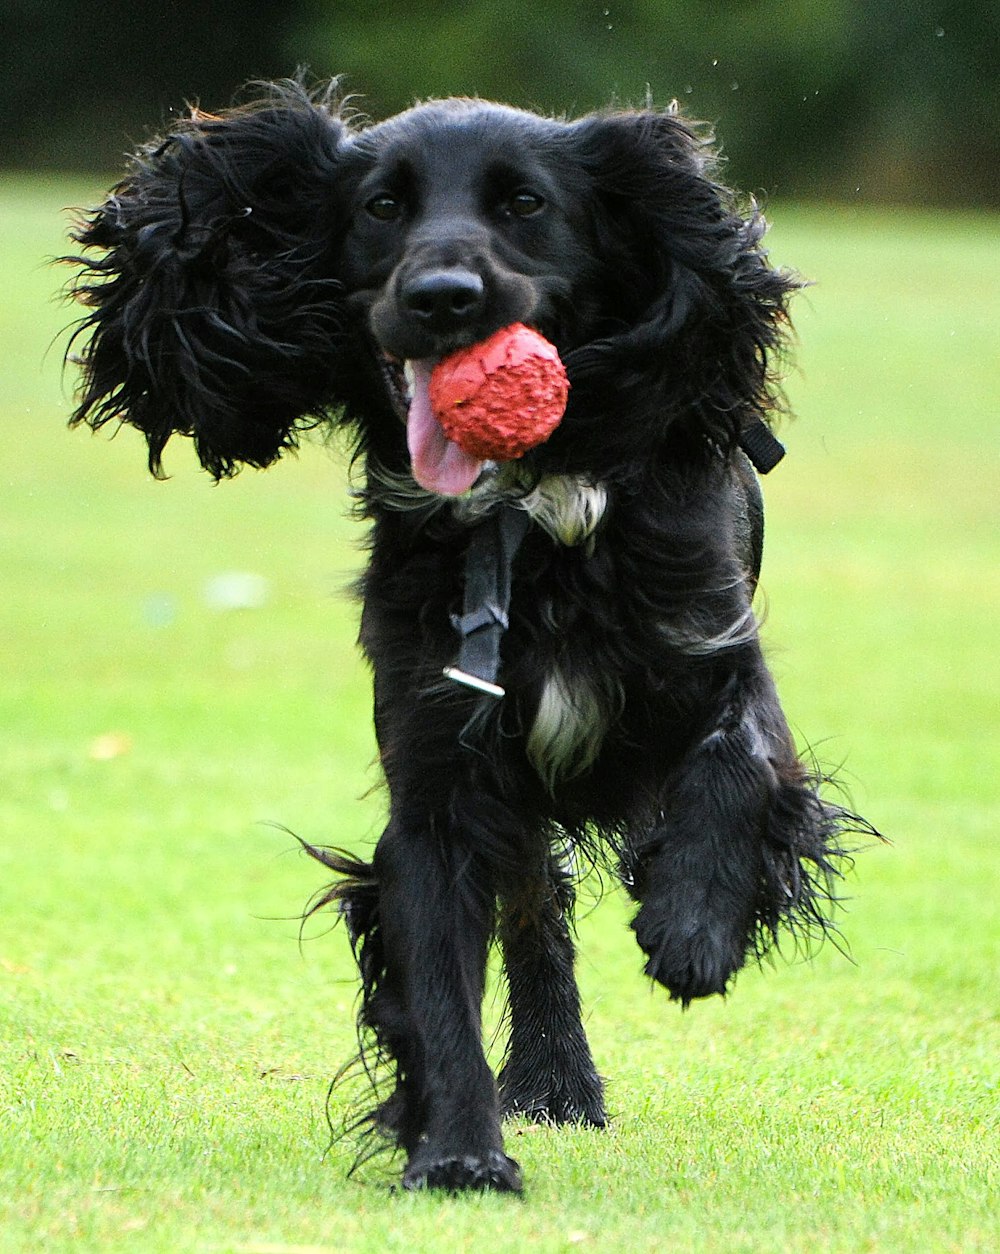 黒のロングコートの大型犬が昼間の緑の芝生の野原に赤いバラを噛む